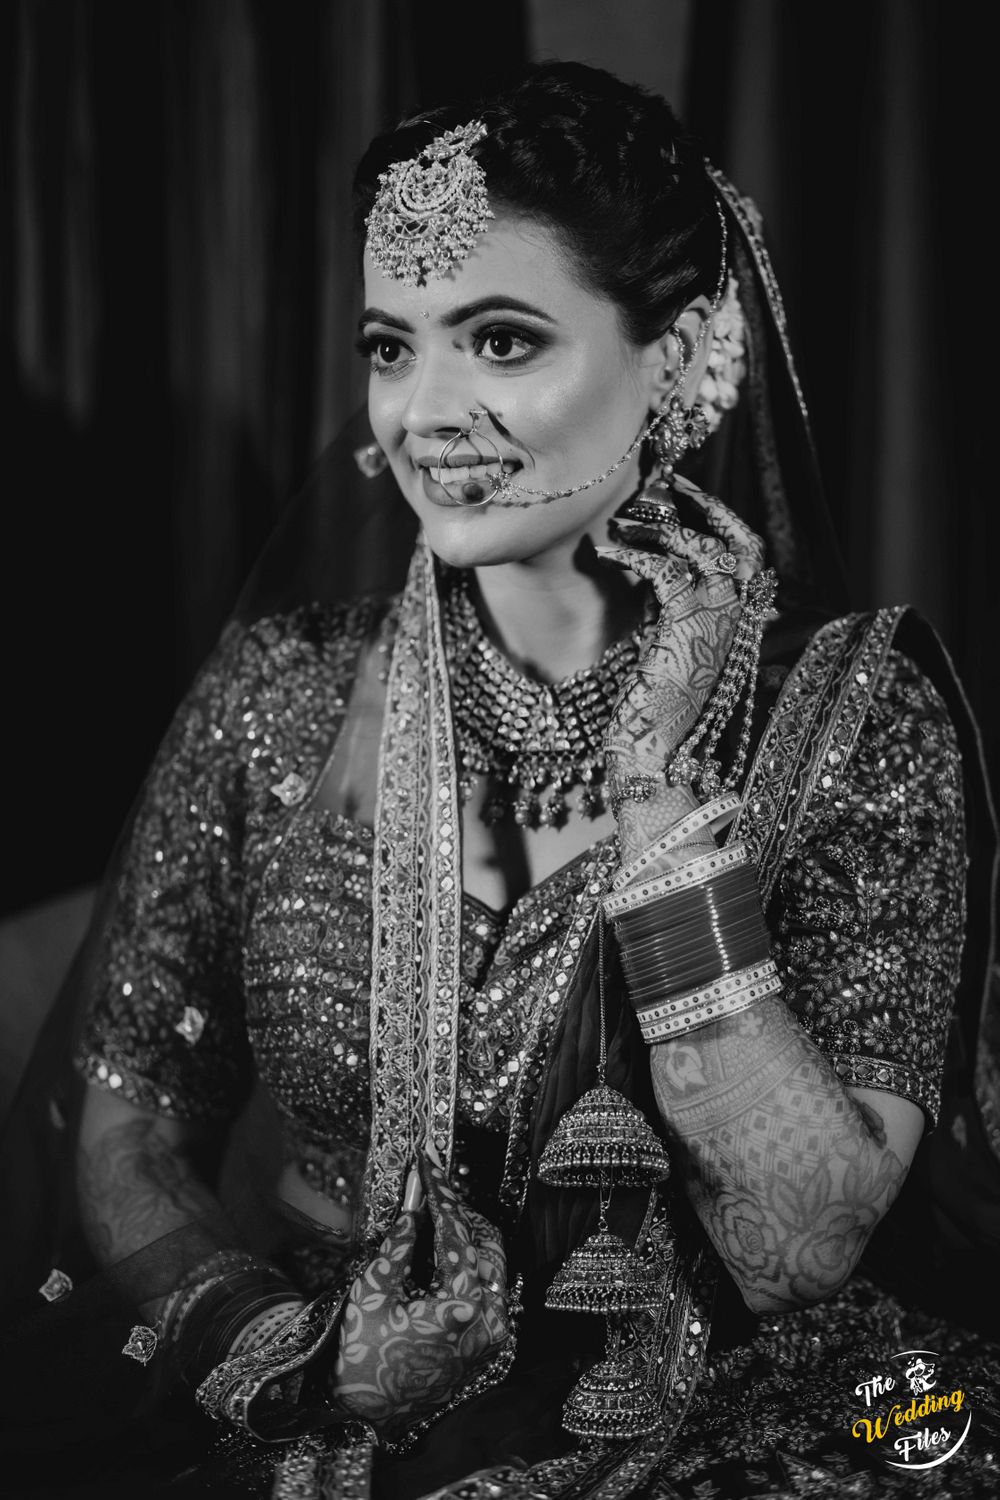 Photo From Anupam & Jyotsana - By The Wedding Files